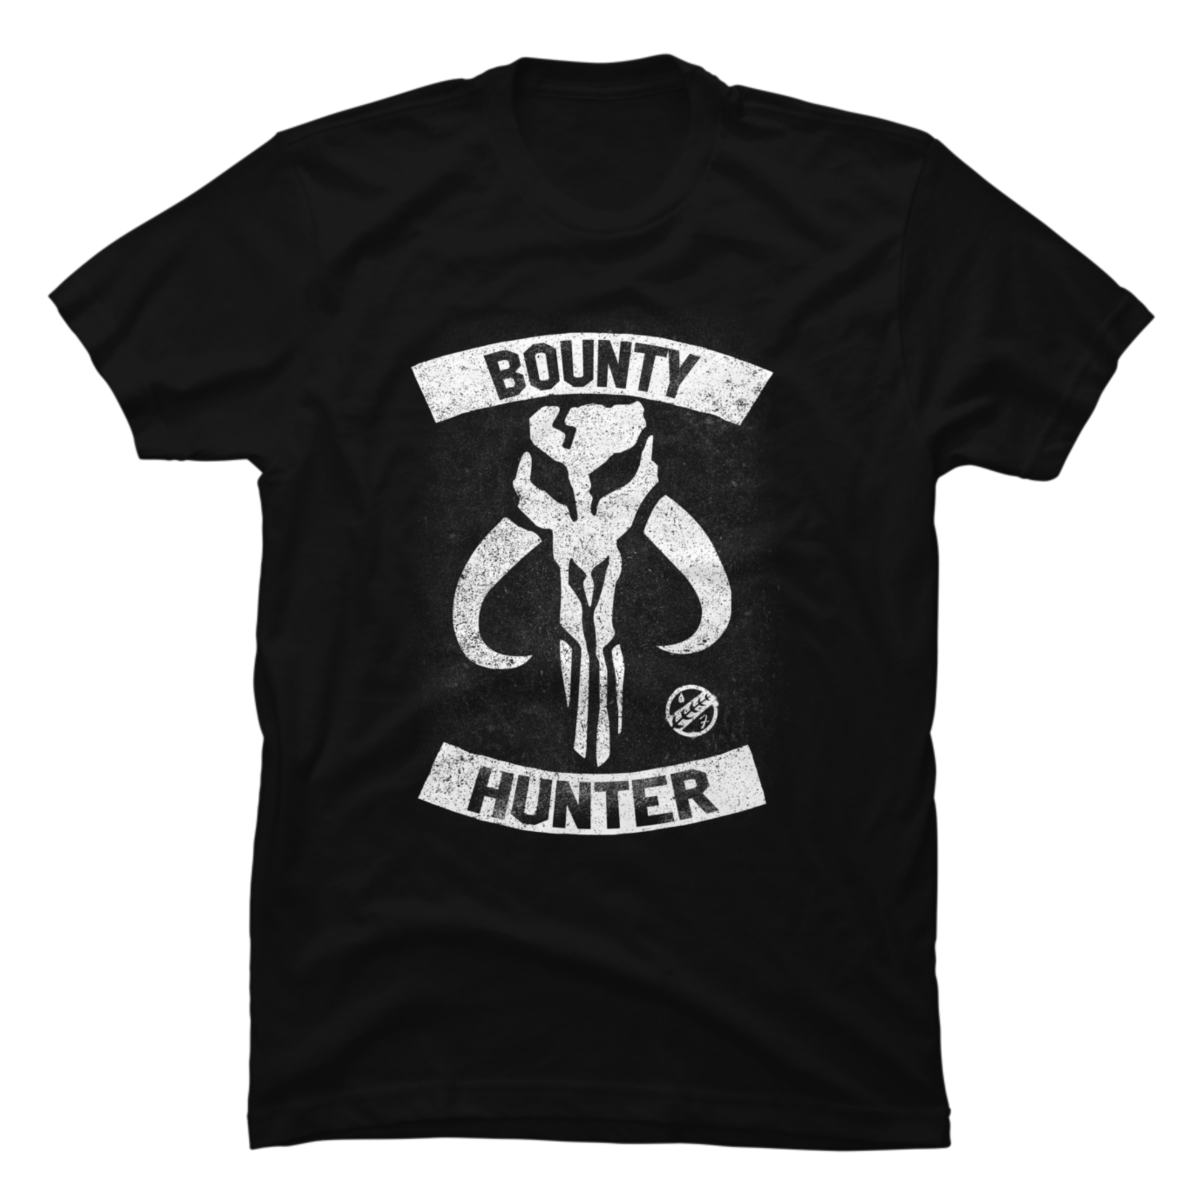 mandalorian bounty hunter shirt